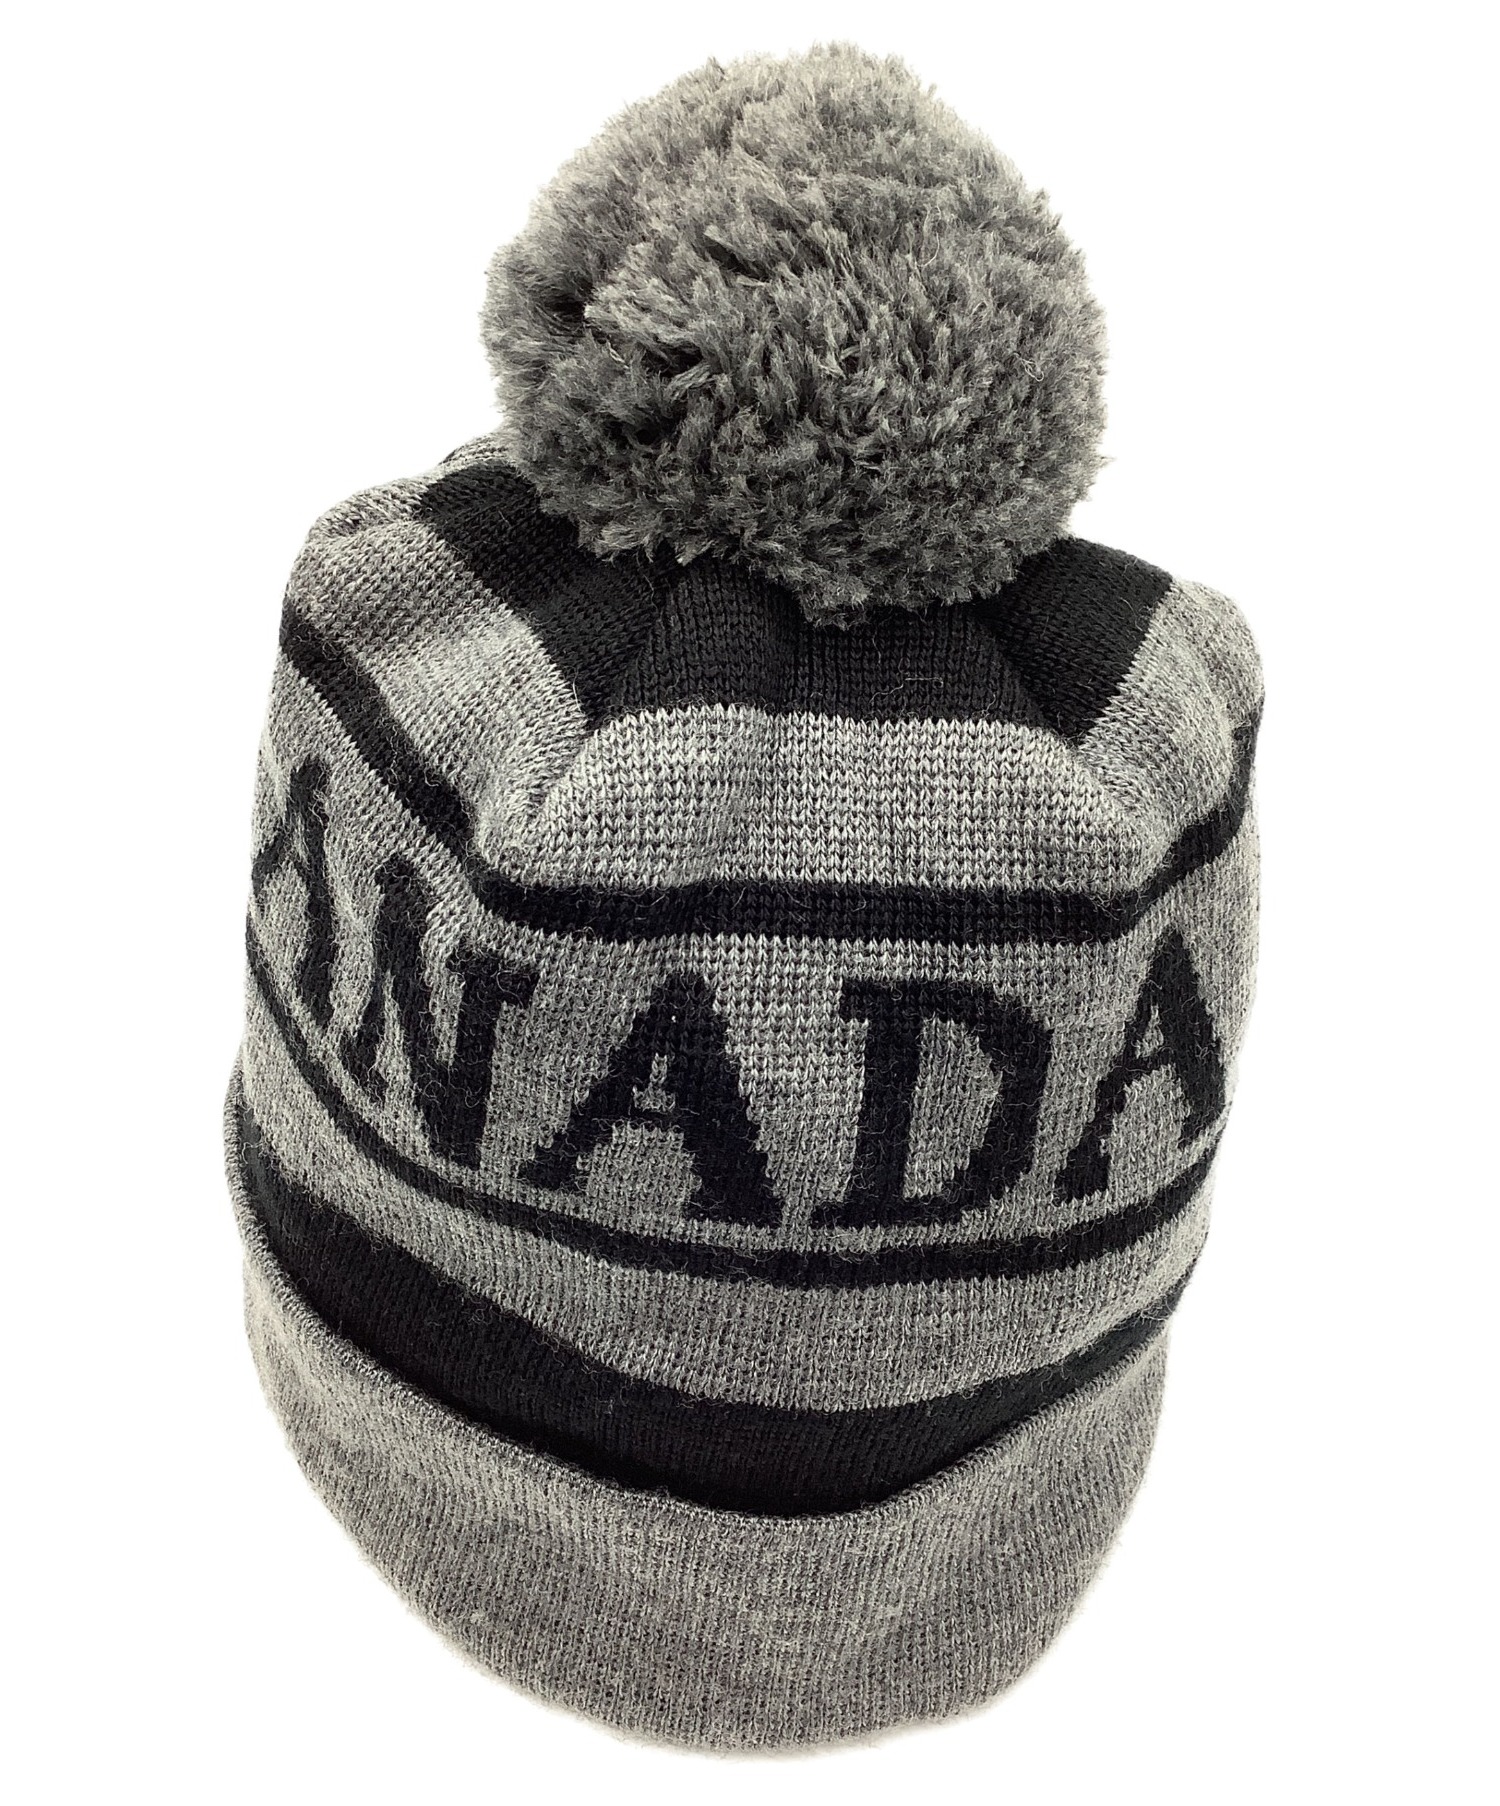 CANADA GOOSE (カナダグース) ニット帽 グレー ウール